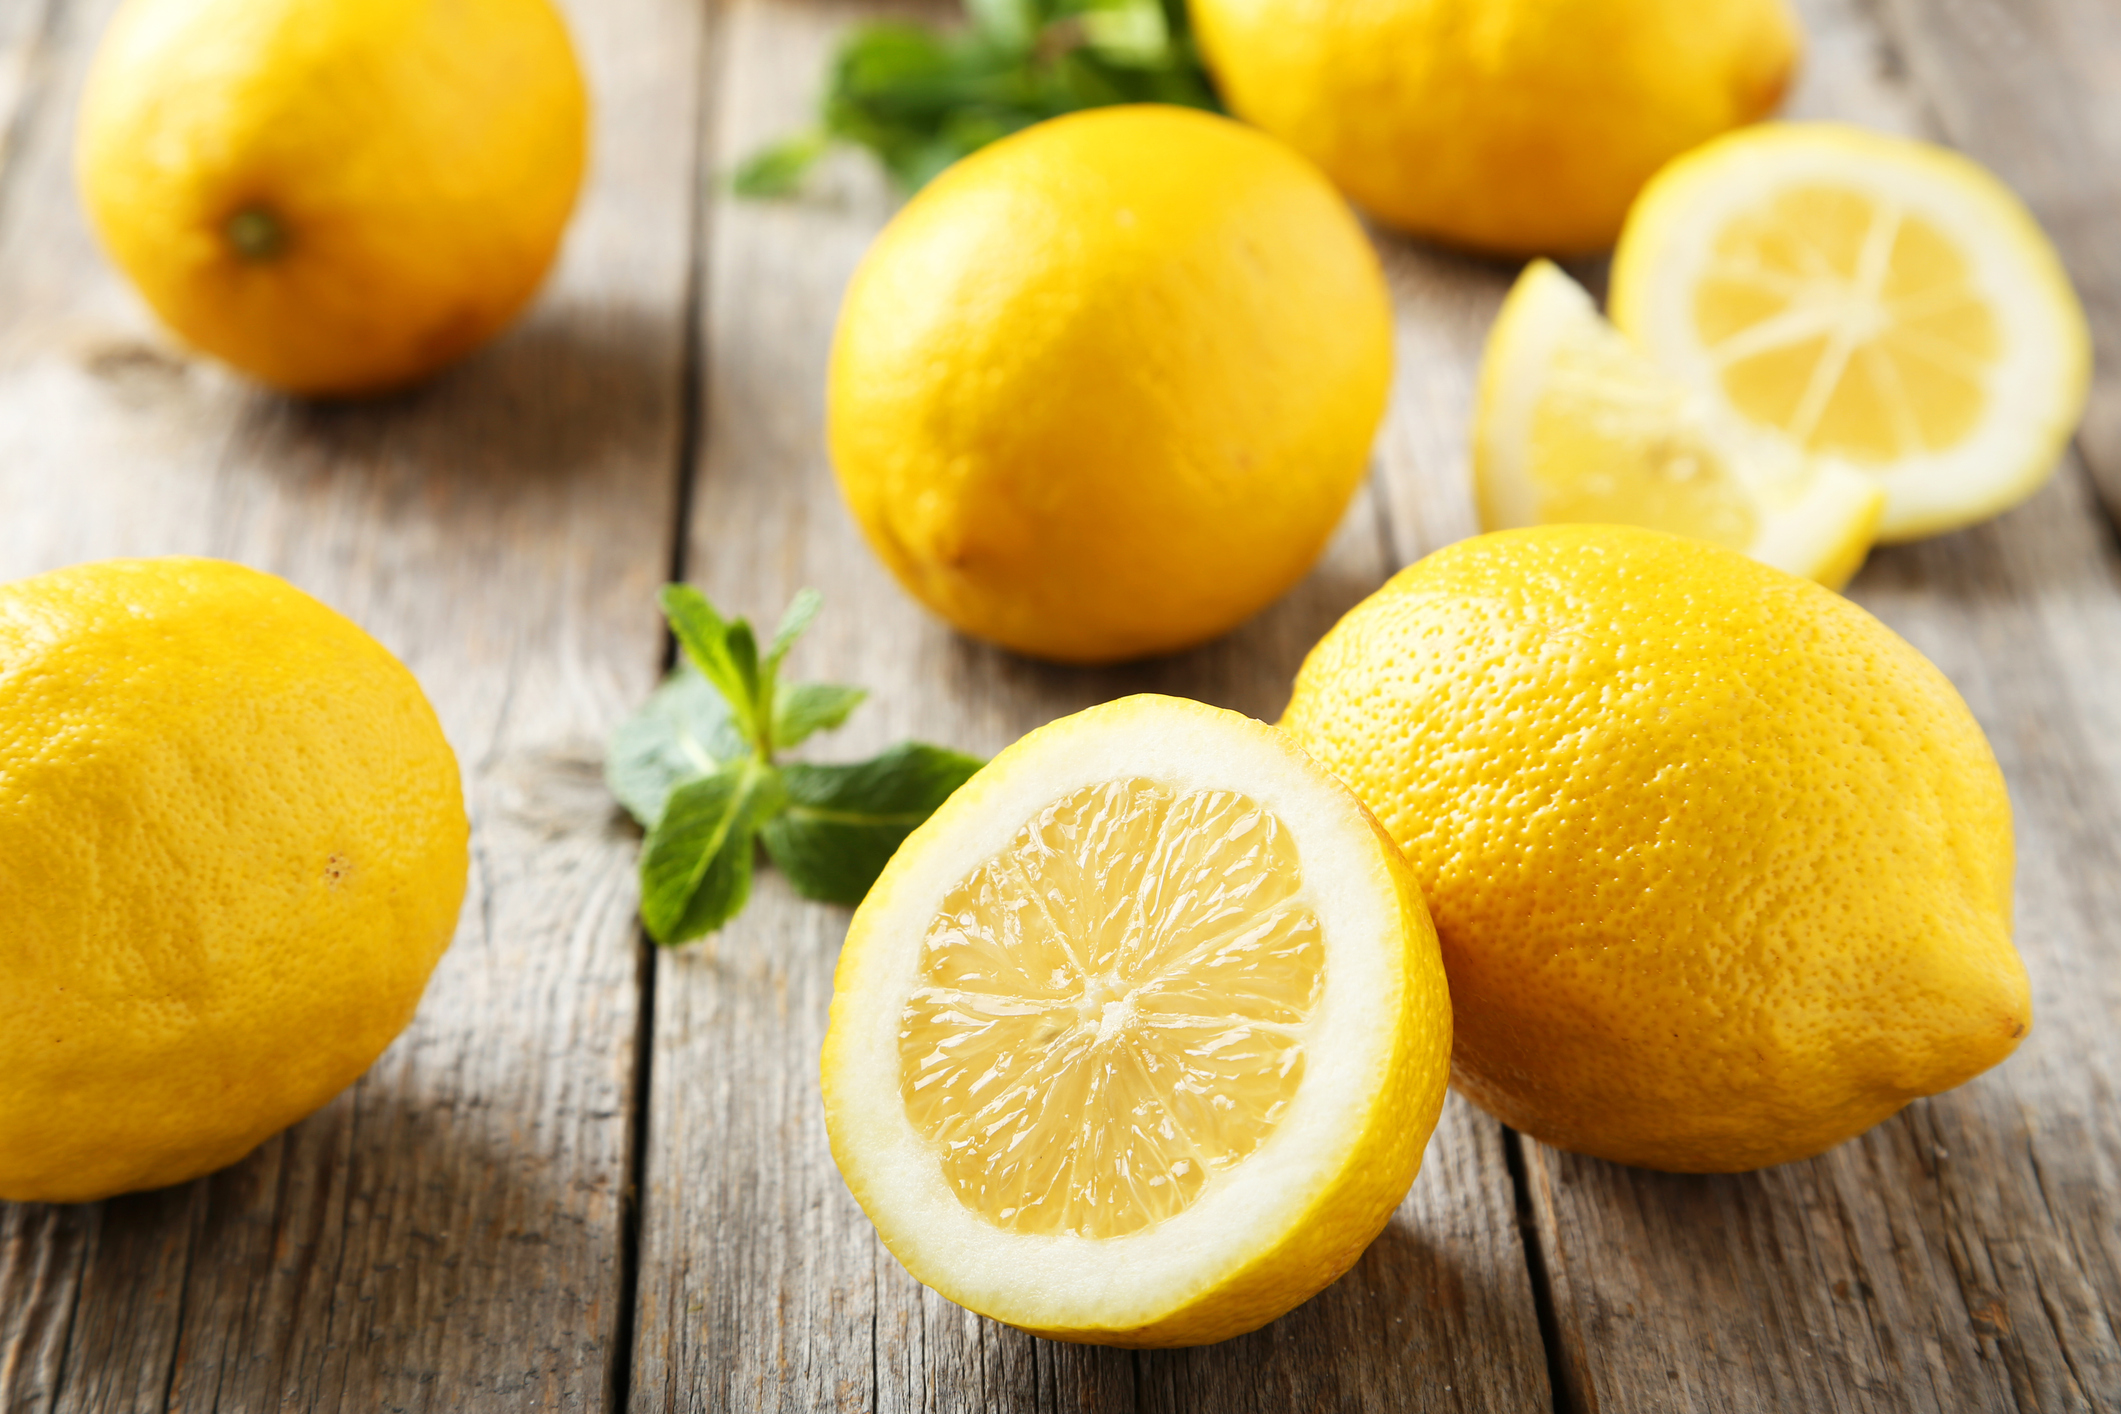 Some Potatoes Lemons Limes And Oranges Recalled Over Listeria Concerns Cbs Sacramento